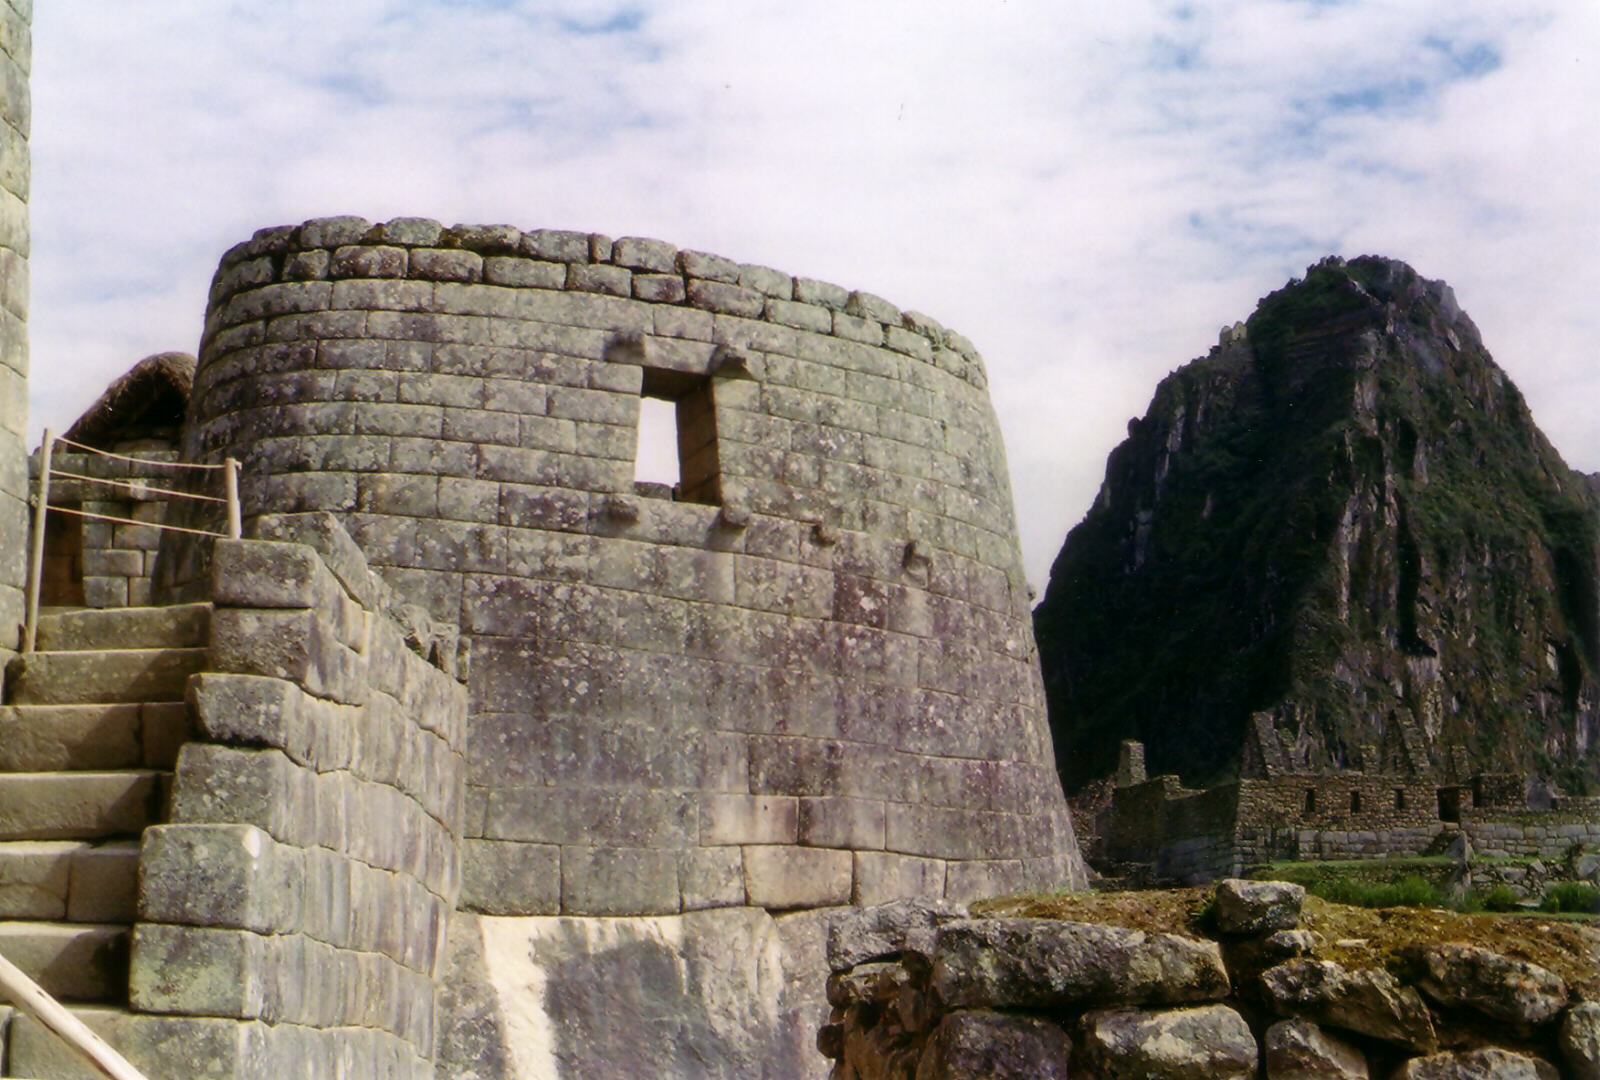 The Temple of the Sun, Machu Picchu, Peru